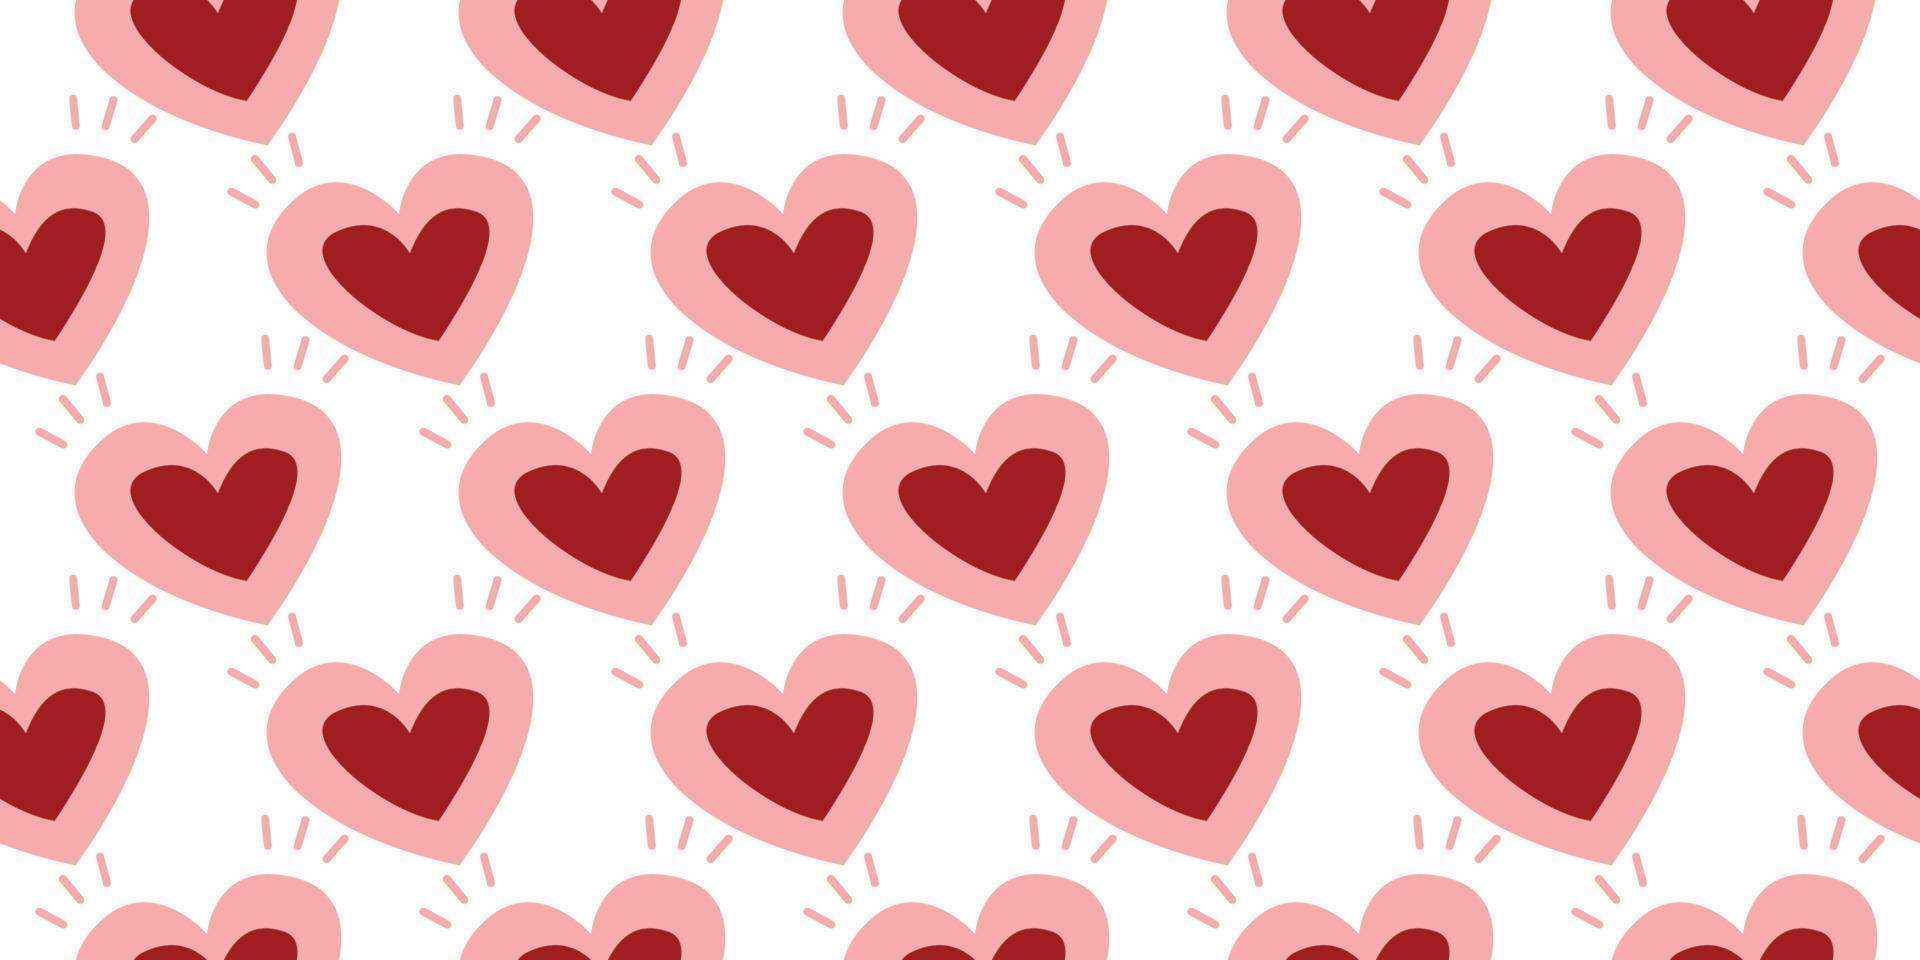 schön Muster Herz. geometrisch süß Stil Herz Vektor, Süss Romantik Muster Hand gezeichnet süß zum dekorieren das Hochzeit Karte zum Valentinstag Tag, Baby, mädchenhaft, Liebe Konzept. Rosa und rot Farbe vektor